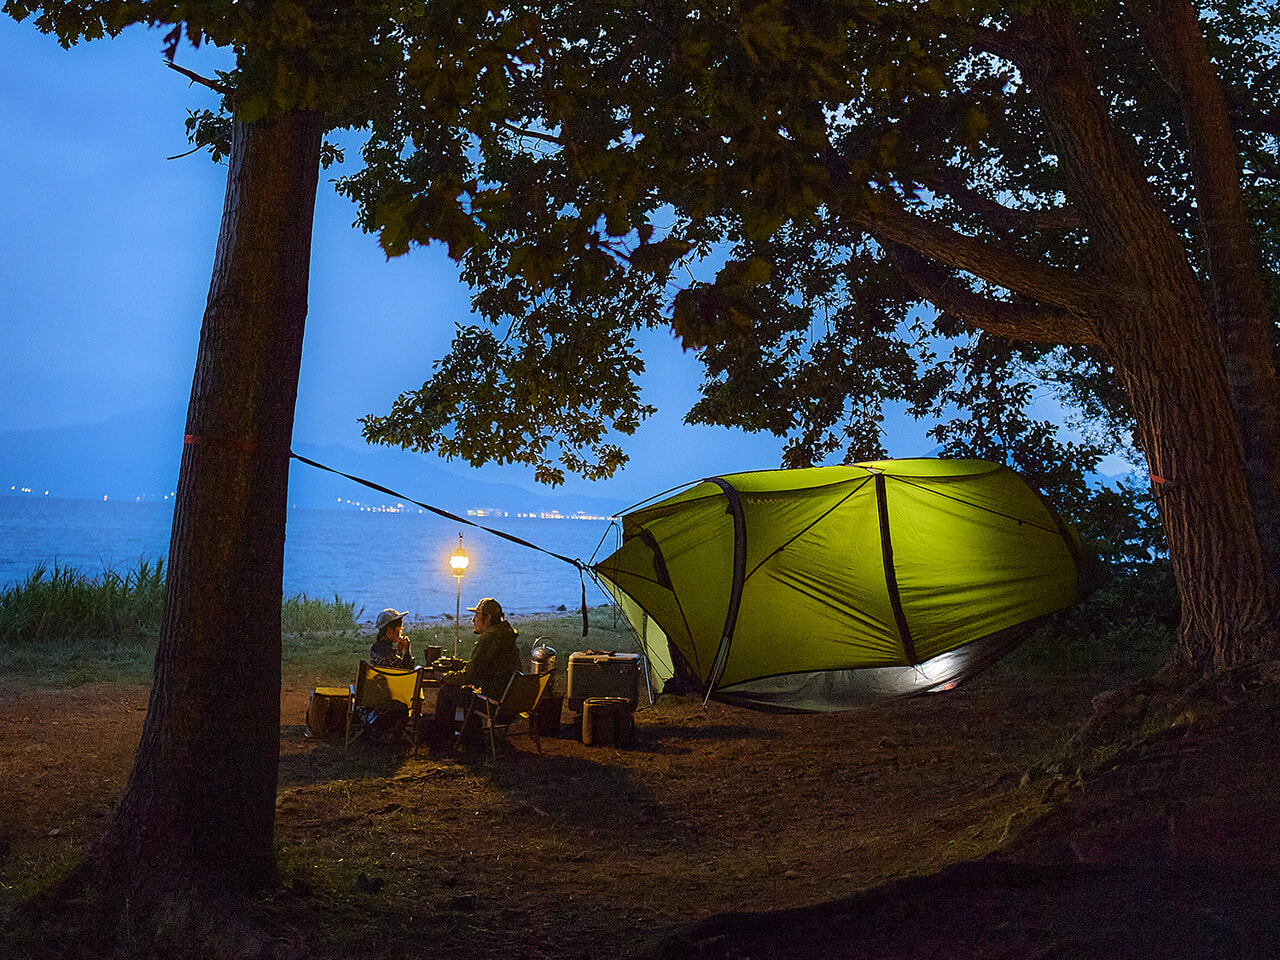 ハンモック泊もテント泊もこれ一つで楽しめる！KAMMOKから全天候型ハンモックテントが登場